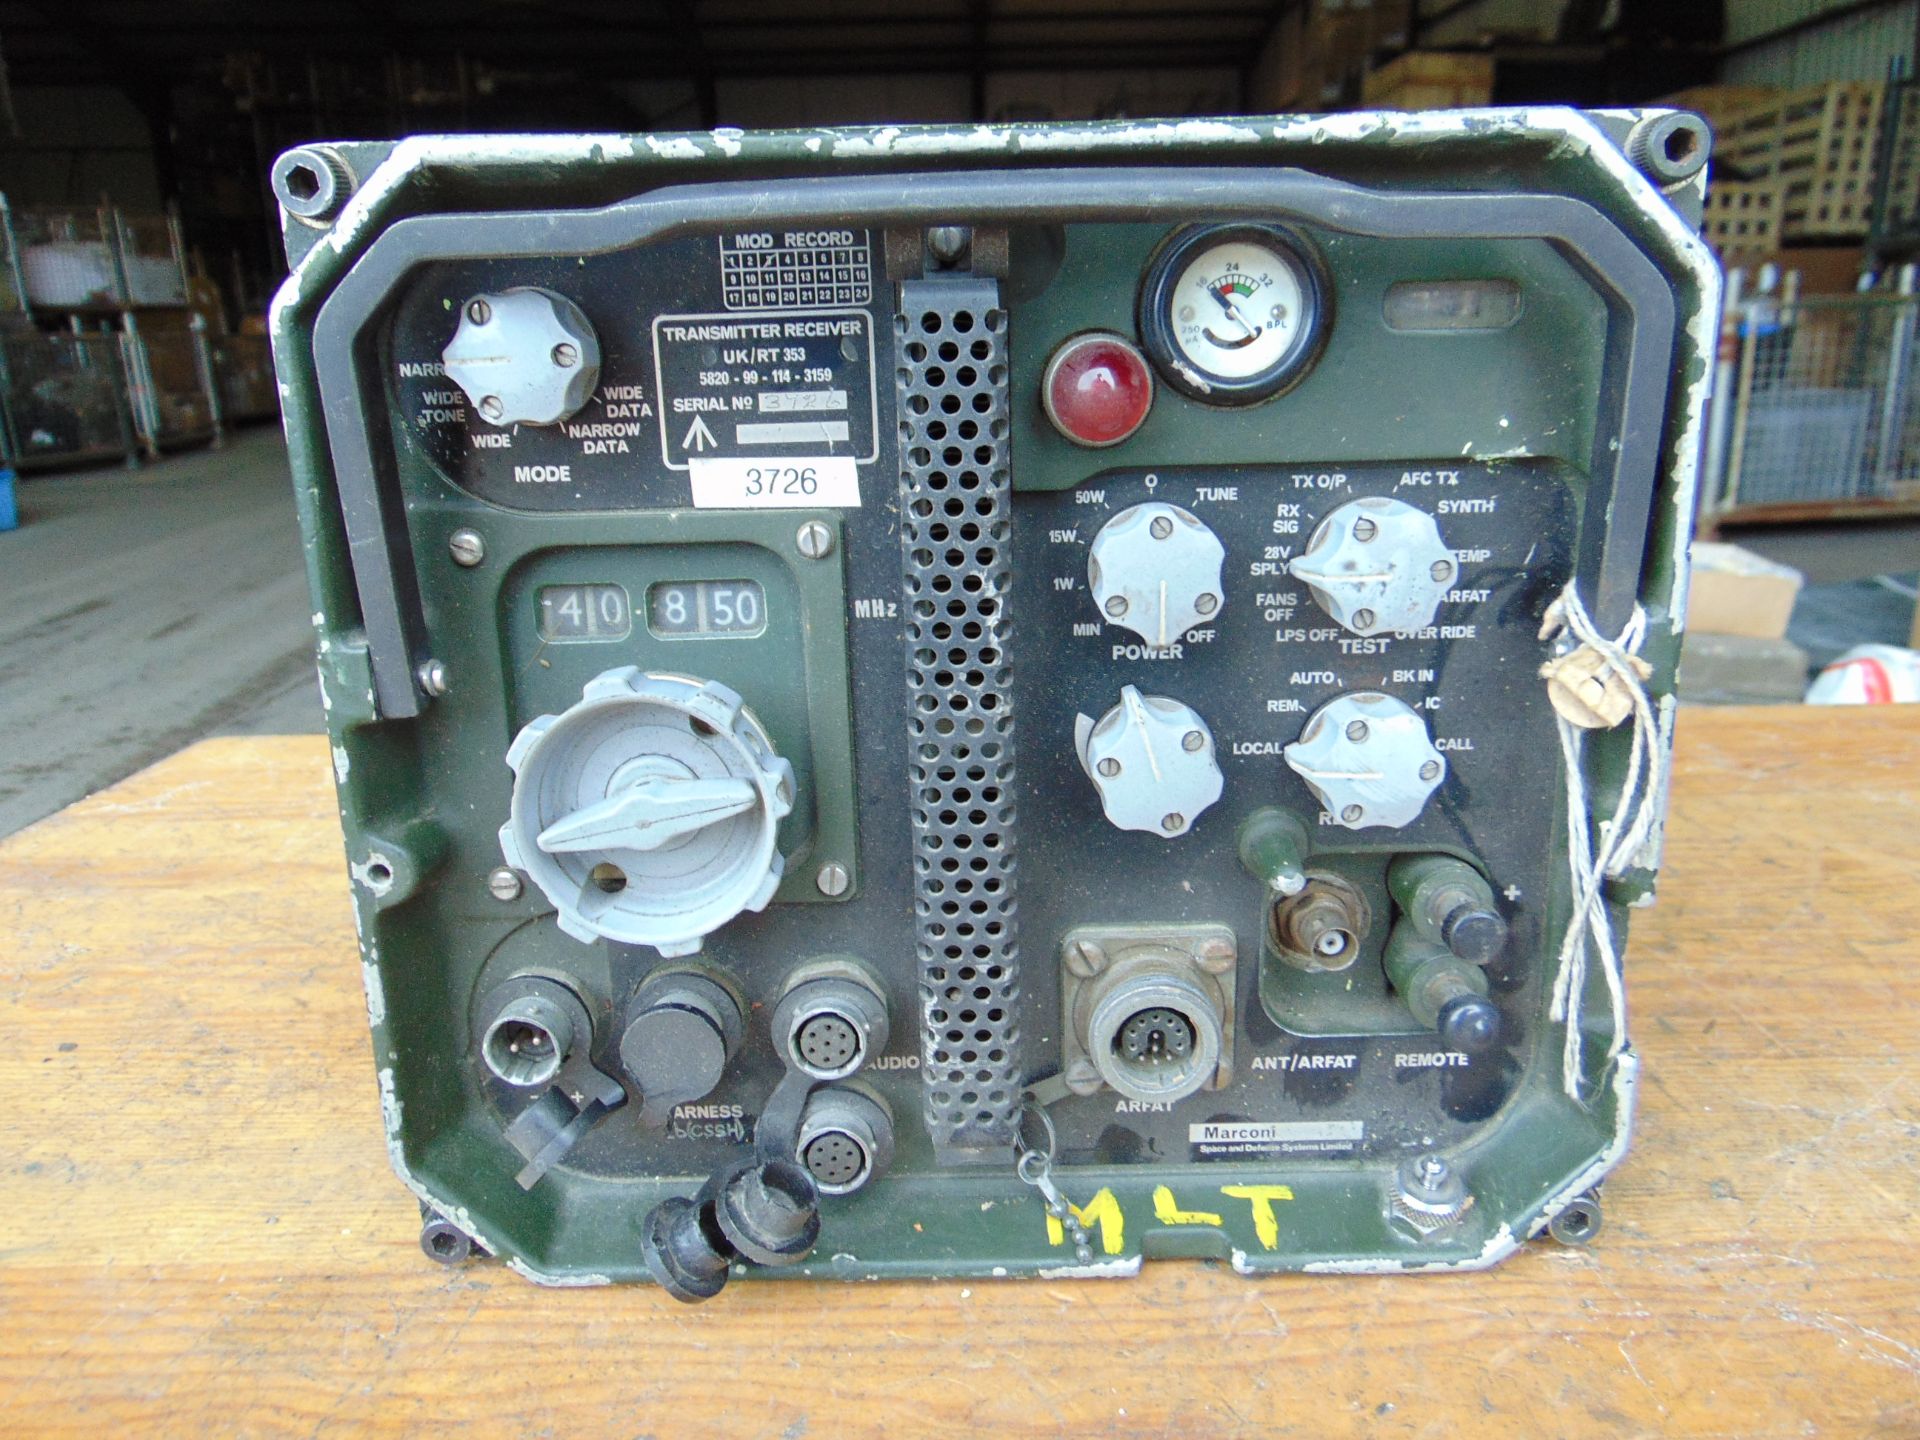 Clansman UK RT 353 VHF Transmitter Receiver Radio - Image 3 of 4